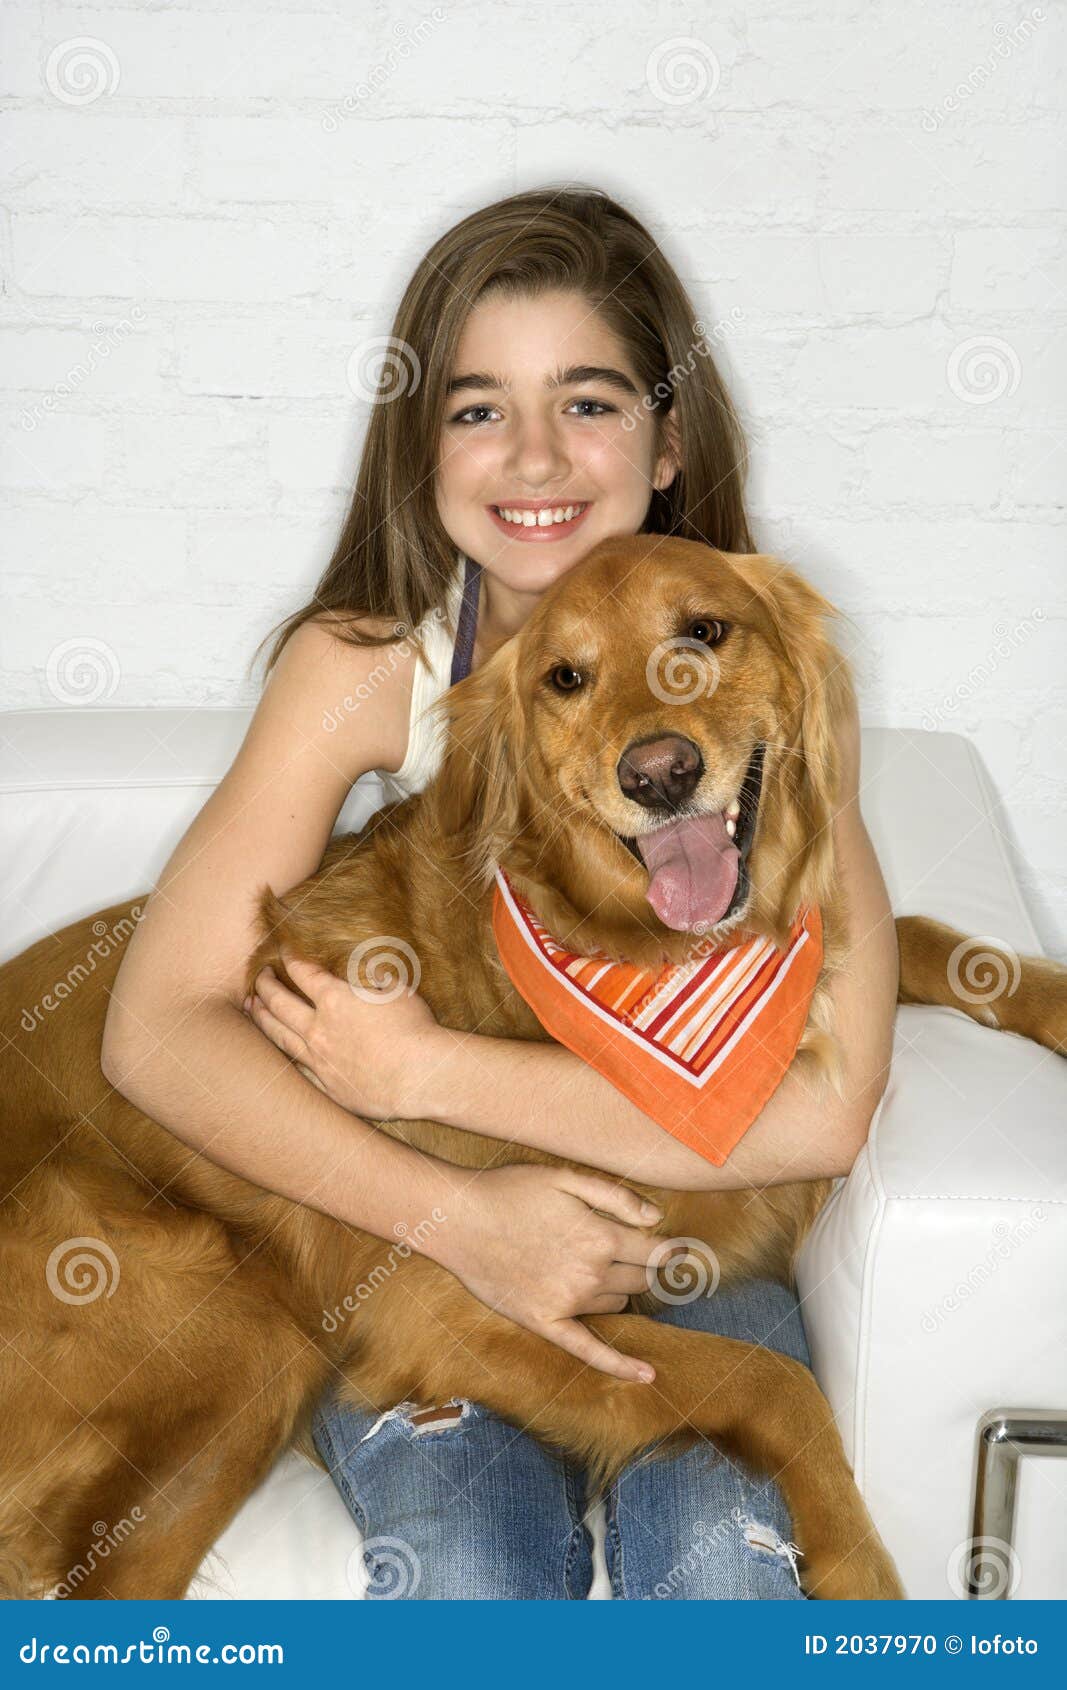 female adolescent holding dog.